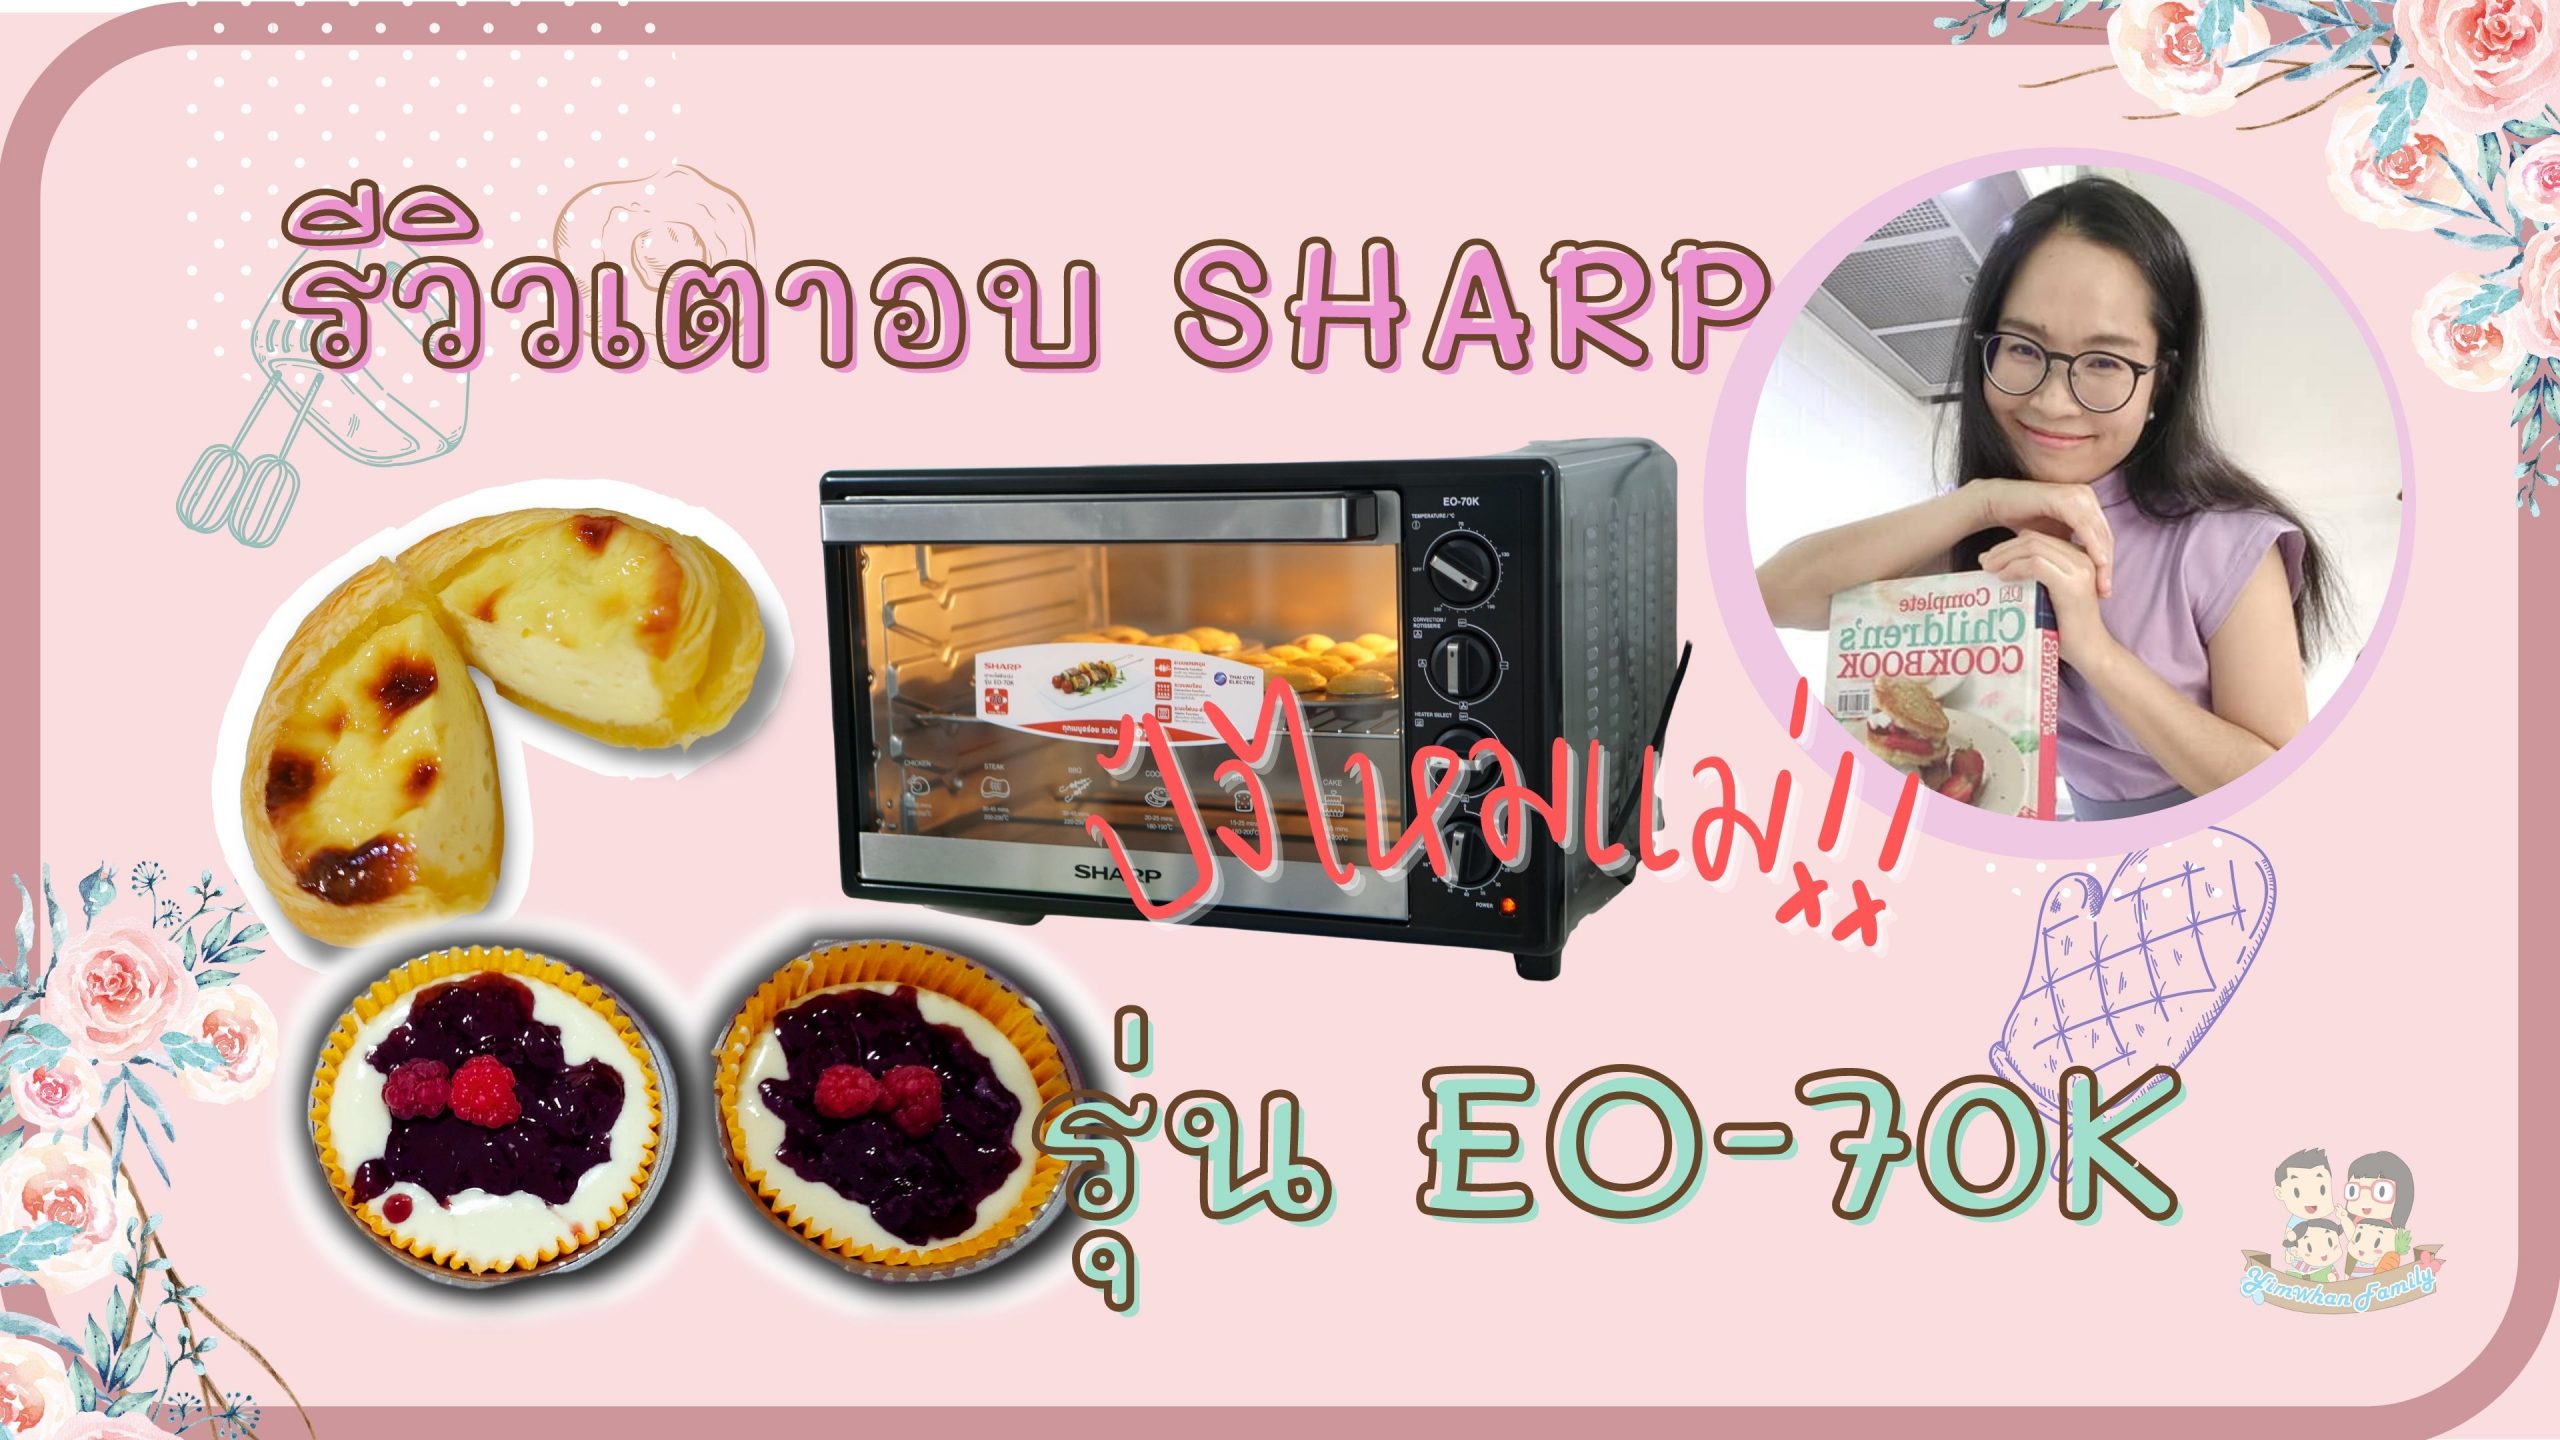 เตาอบ - ชาร์ป - Oven - Sharp - Garden - Learn - Homeschool - Library - Kid - Baby - Read - cook - bakery